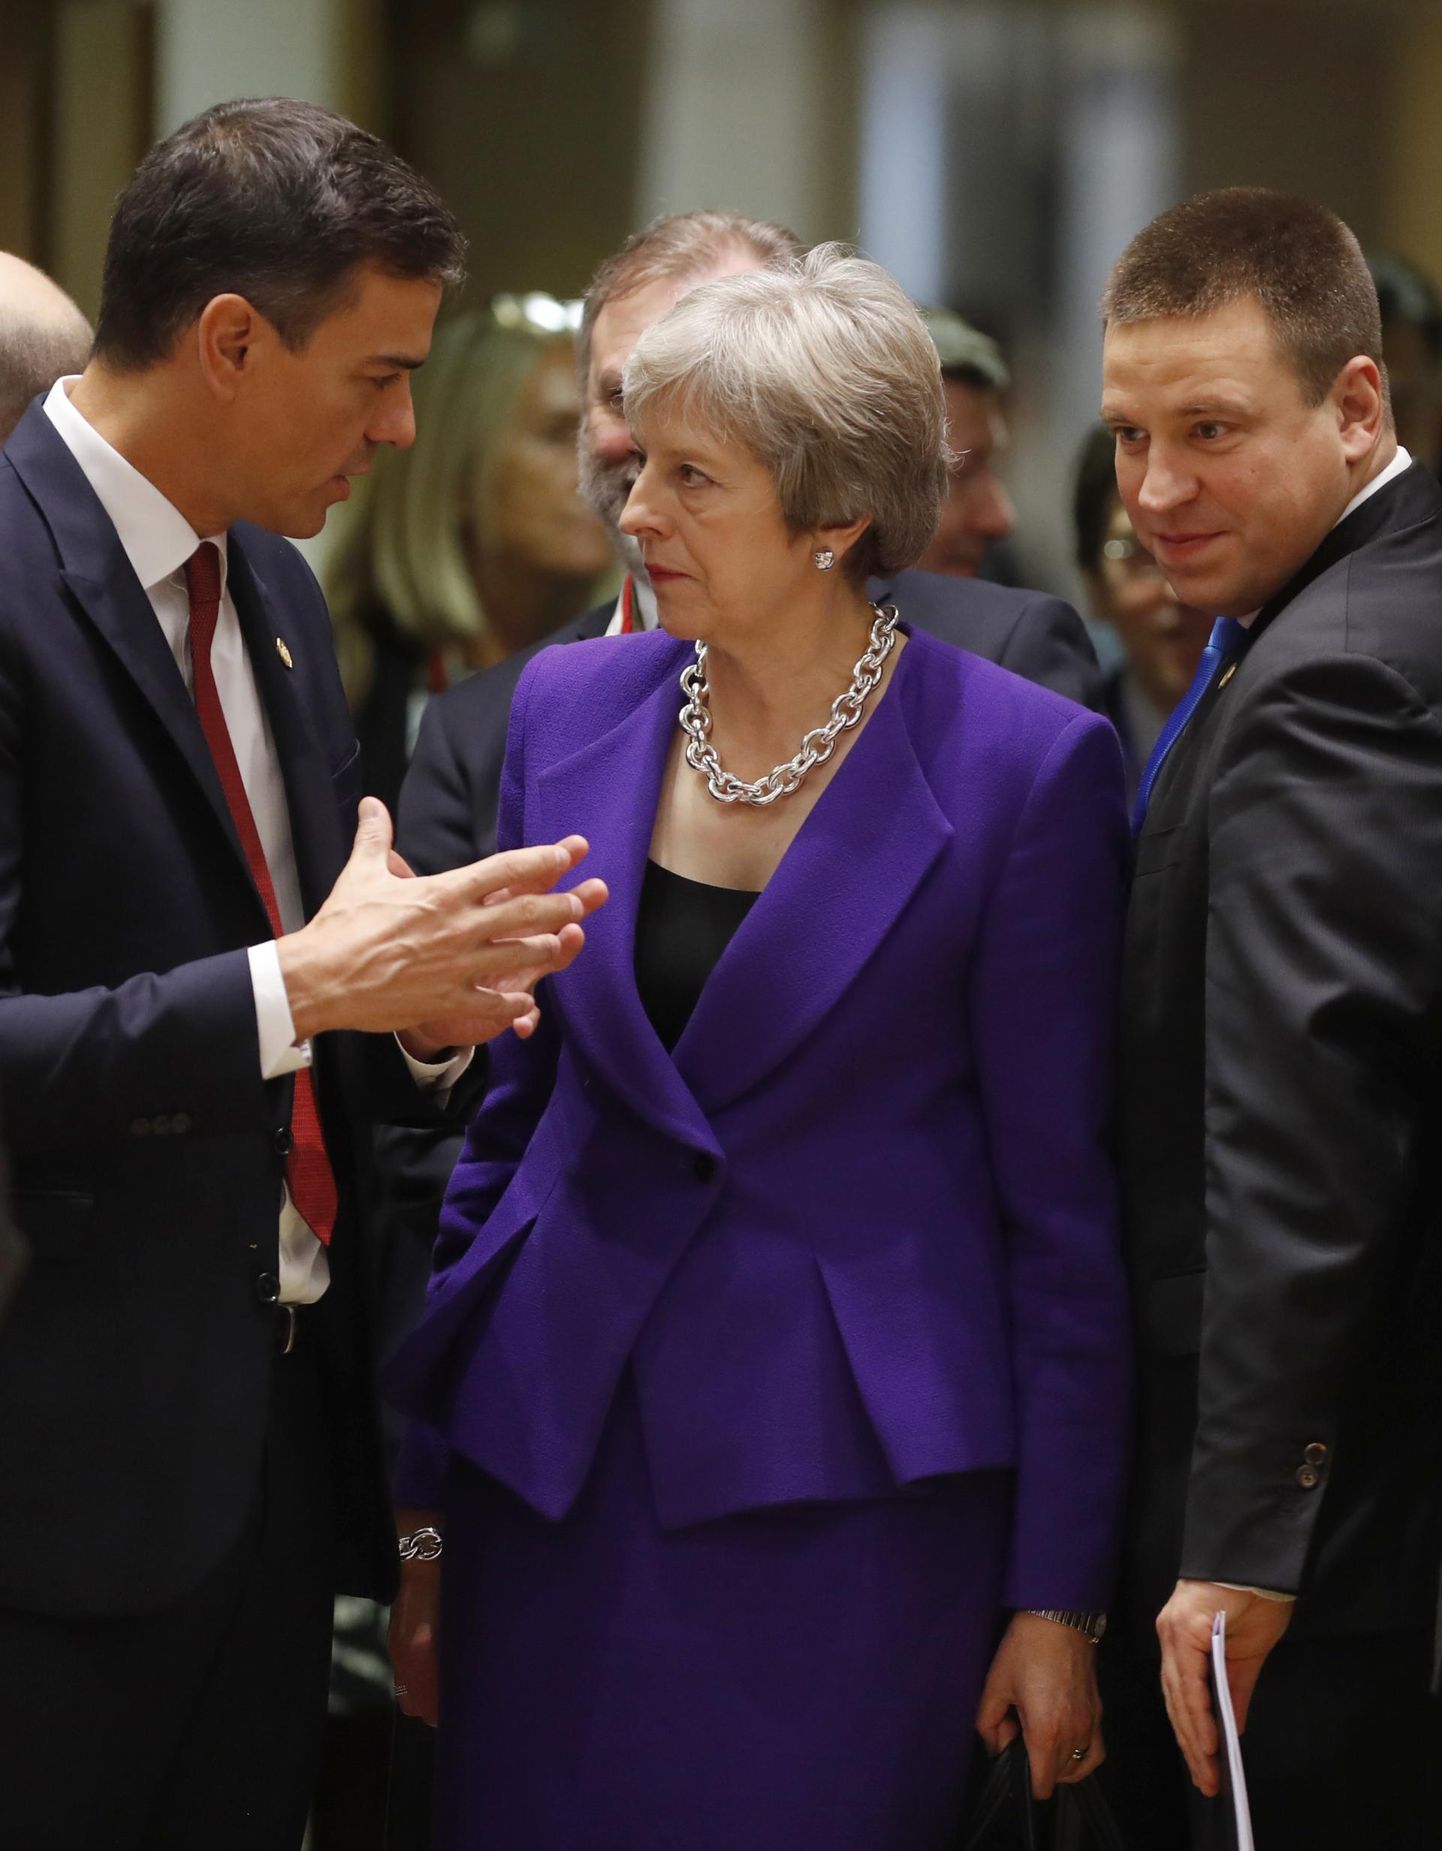 Kui Briti peaminister Theresa May (keskel), Hispaania valitsusjuht Pedro Sánchez (vasakul), Eesti peaminister Jüri Ratas ja teised ELi valitsusjuhid eelmisel, oktoobris toimund ülemkogul kohtusid, polnud Gibraltari küsimusest juttugi.